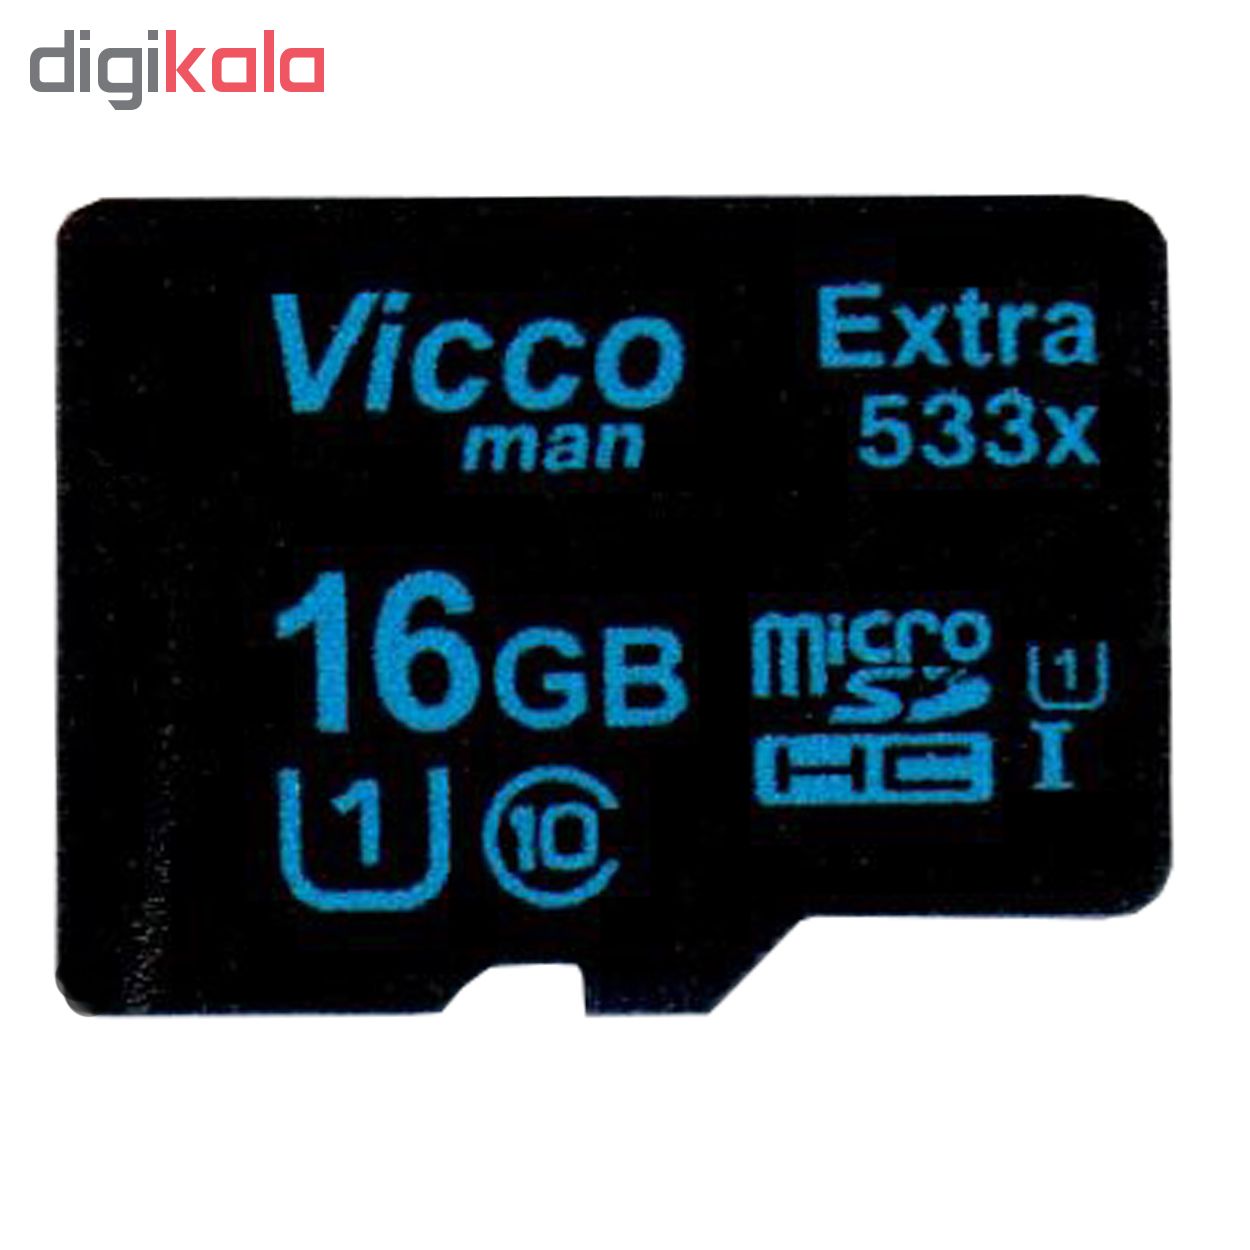 کارت حافظه microSDHC مدل Extra 533x  کلاس 10 استاندارد UHS-I U1 سرعت 80MBps ظرفیت 16 گیگابایت